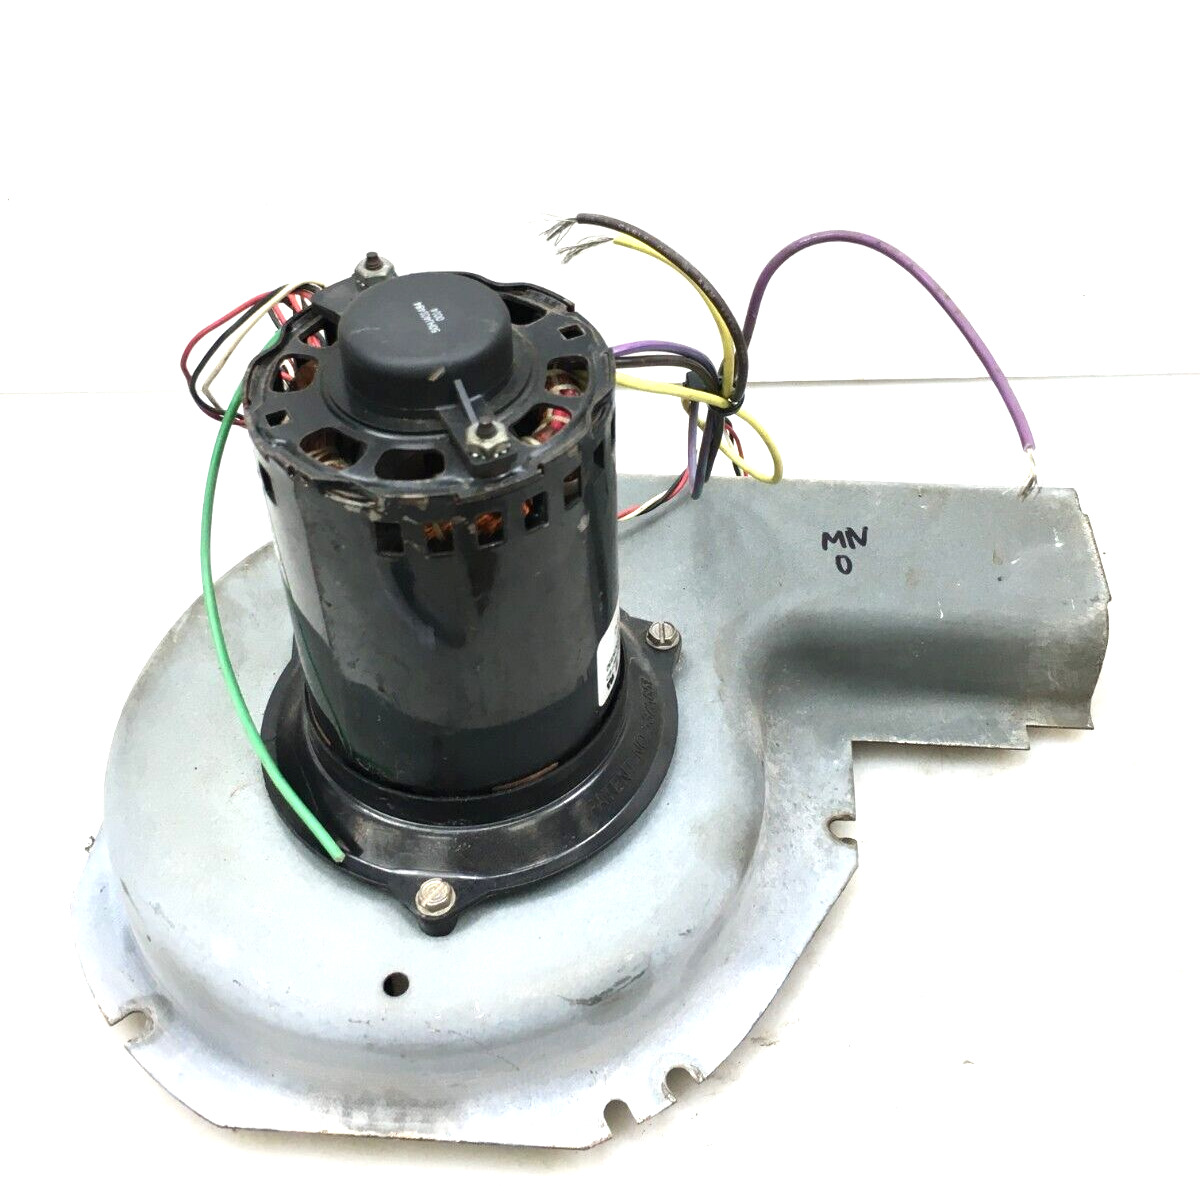 Magnetek JF1H112N Inducer Blower Motor Assembly HC30CK230 208/230V used #MN0